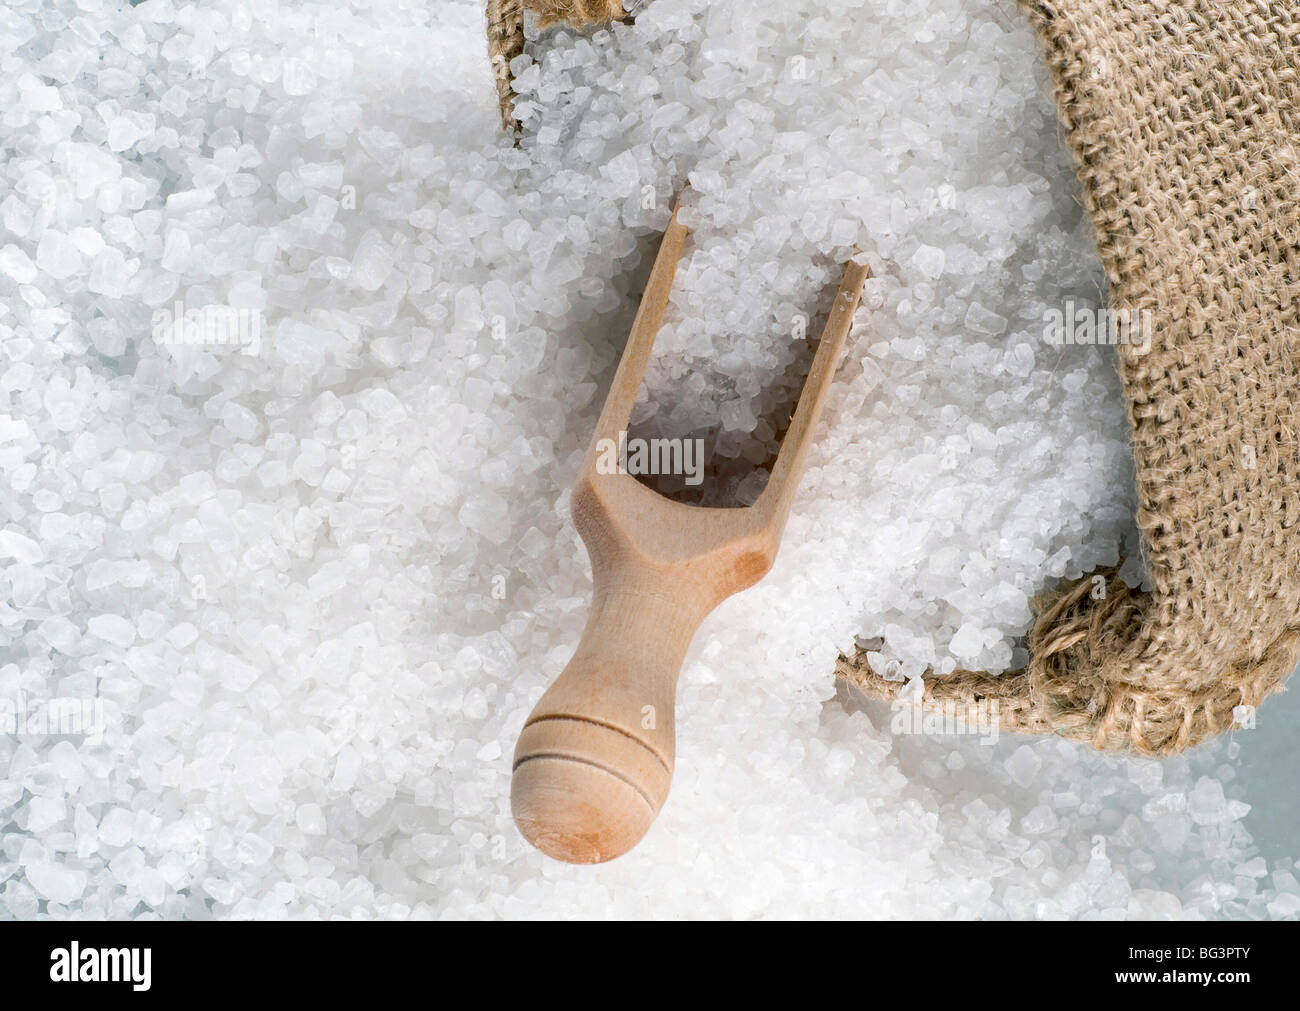 Dettaglio del sale marino in un sacco di tela Foto Stock